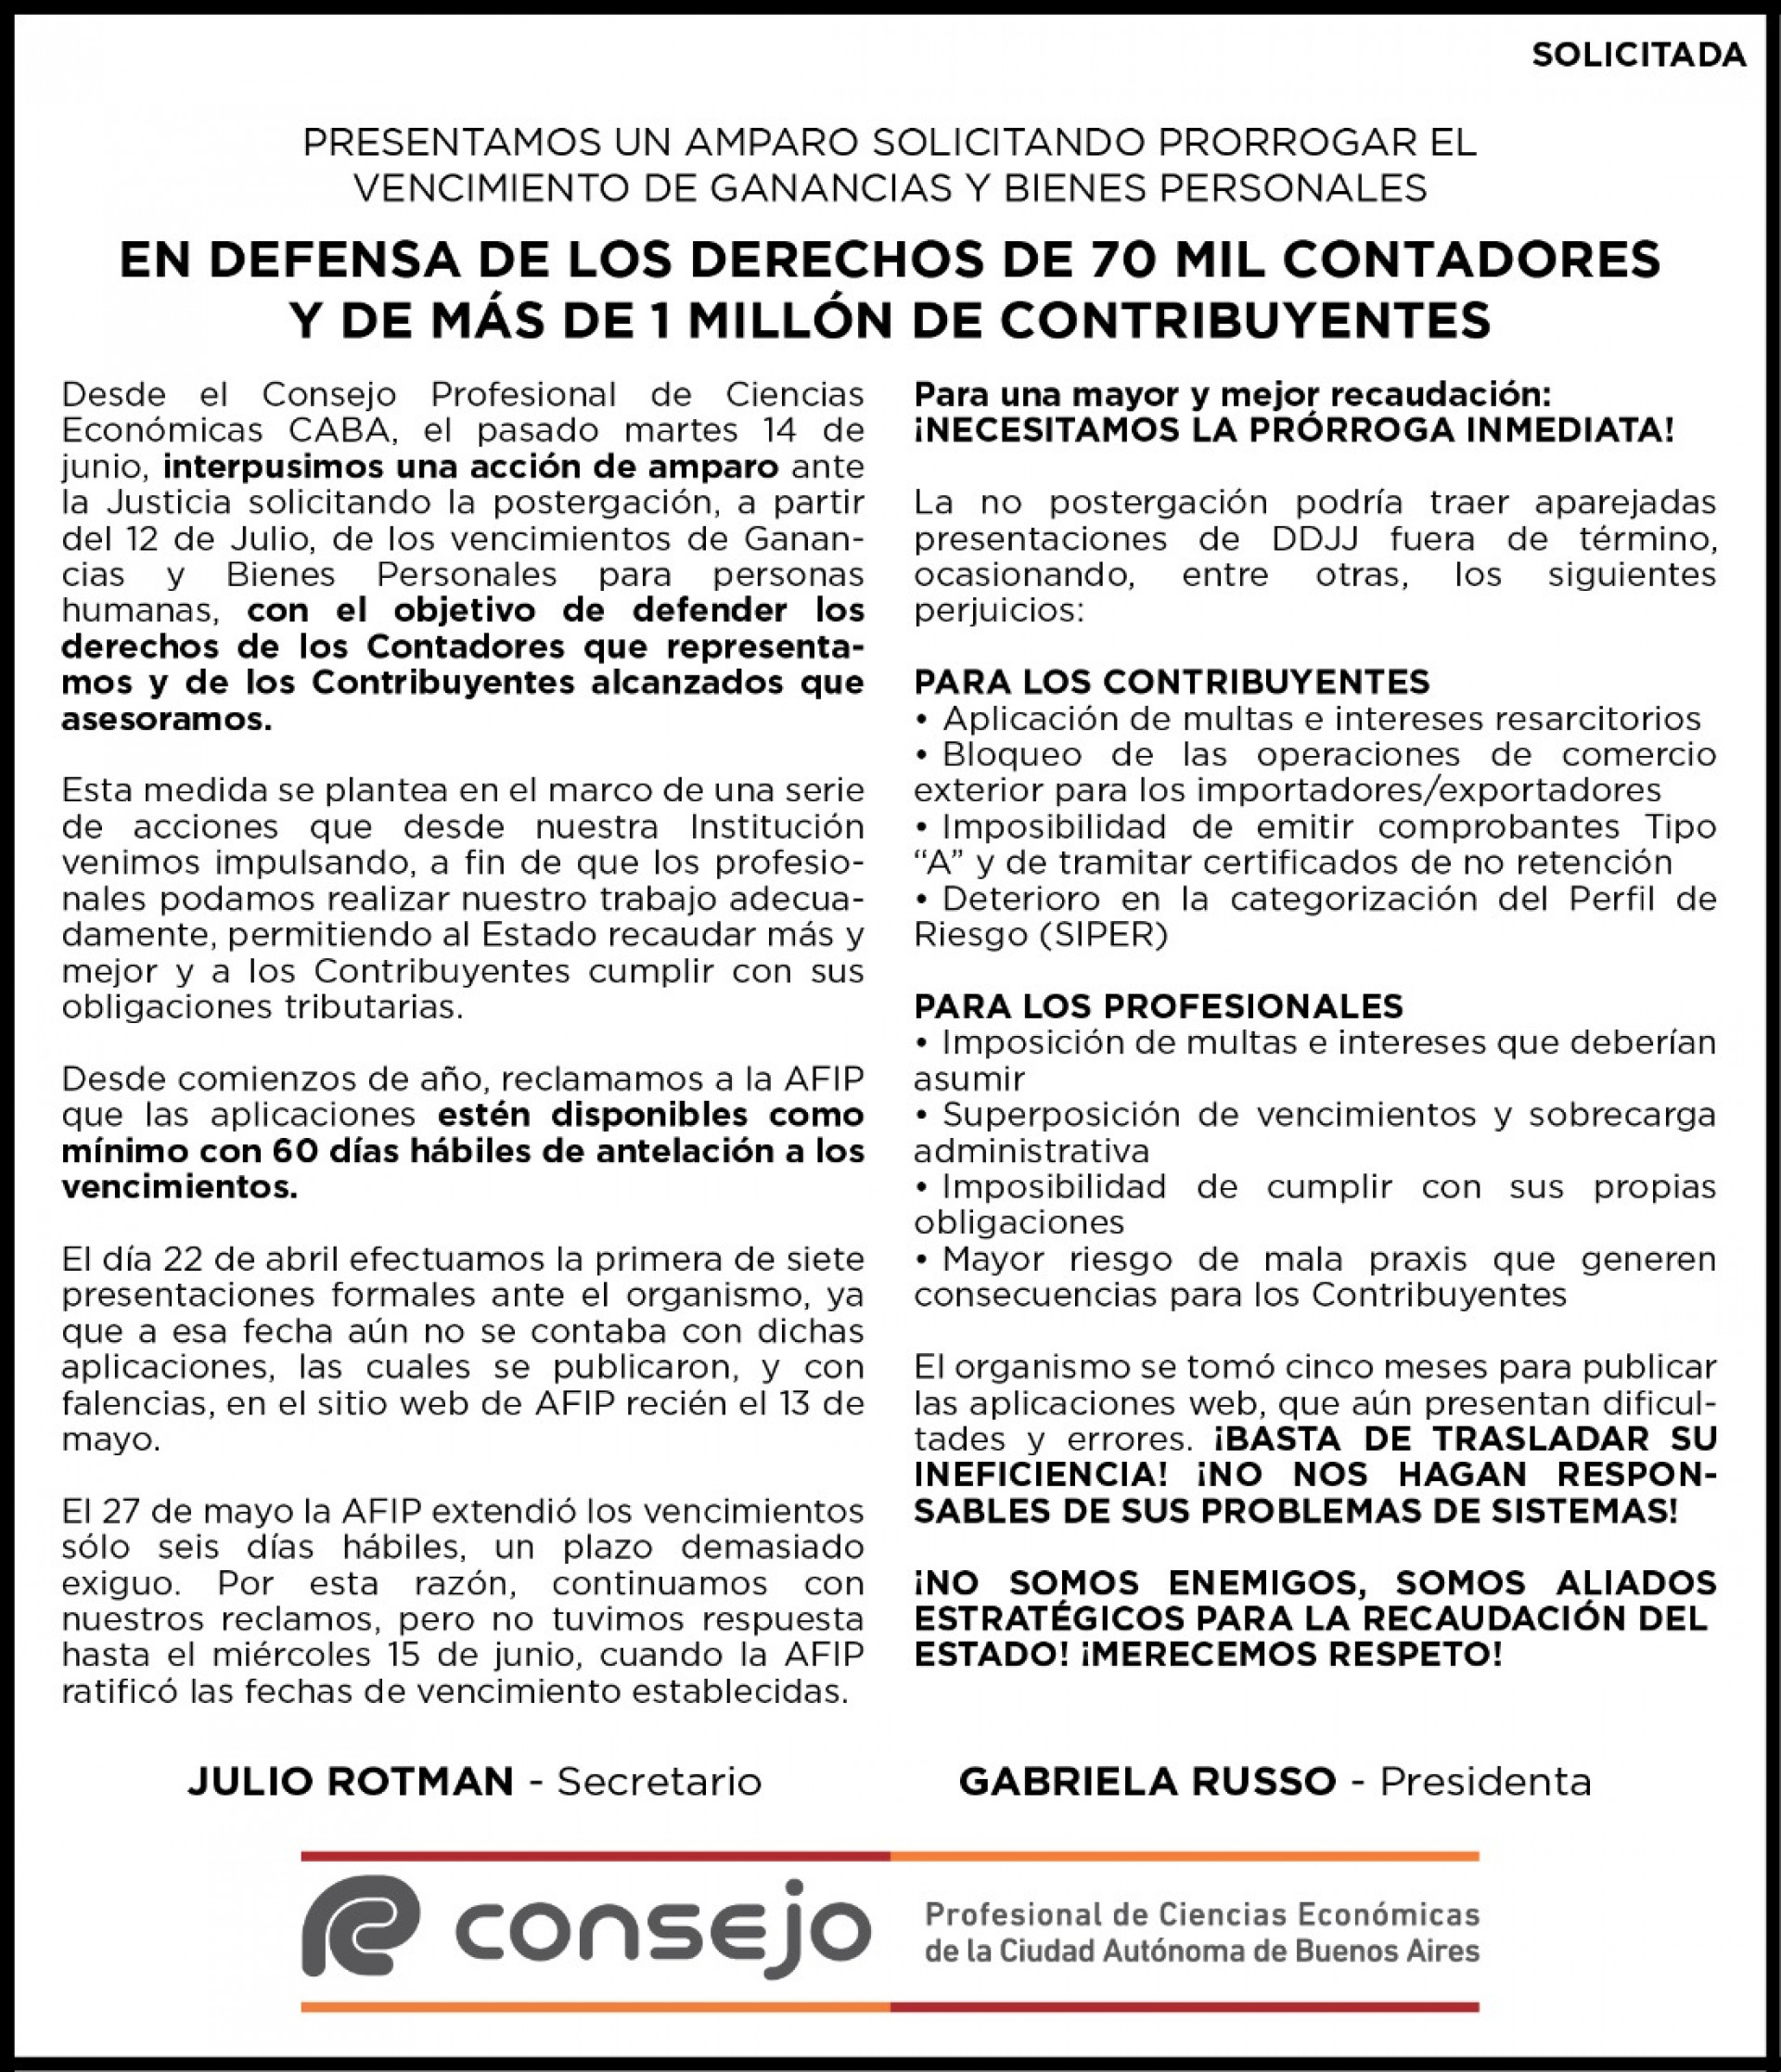 Imagen de la Solicitada publicada hoy en Clarín